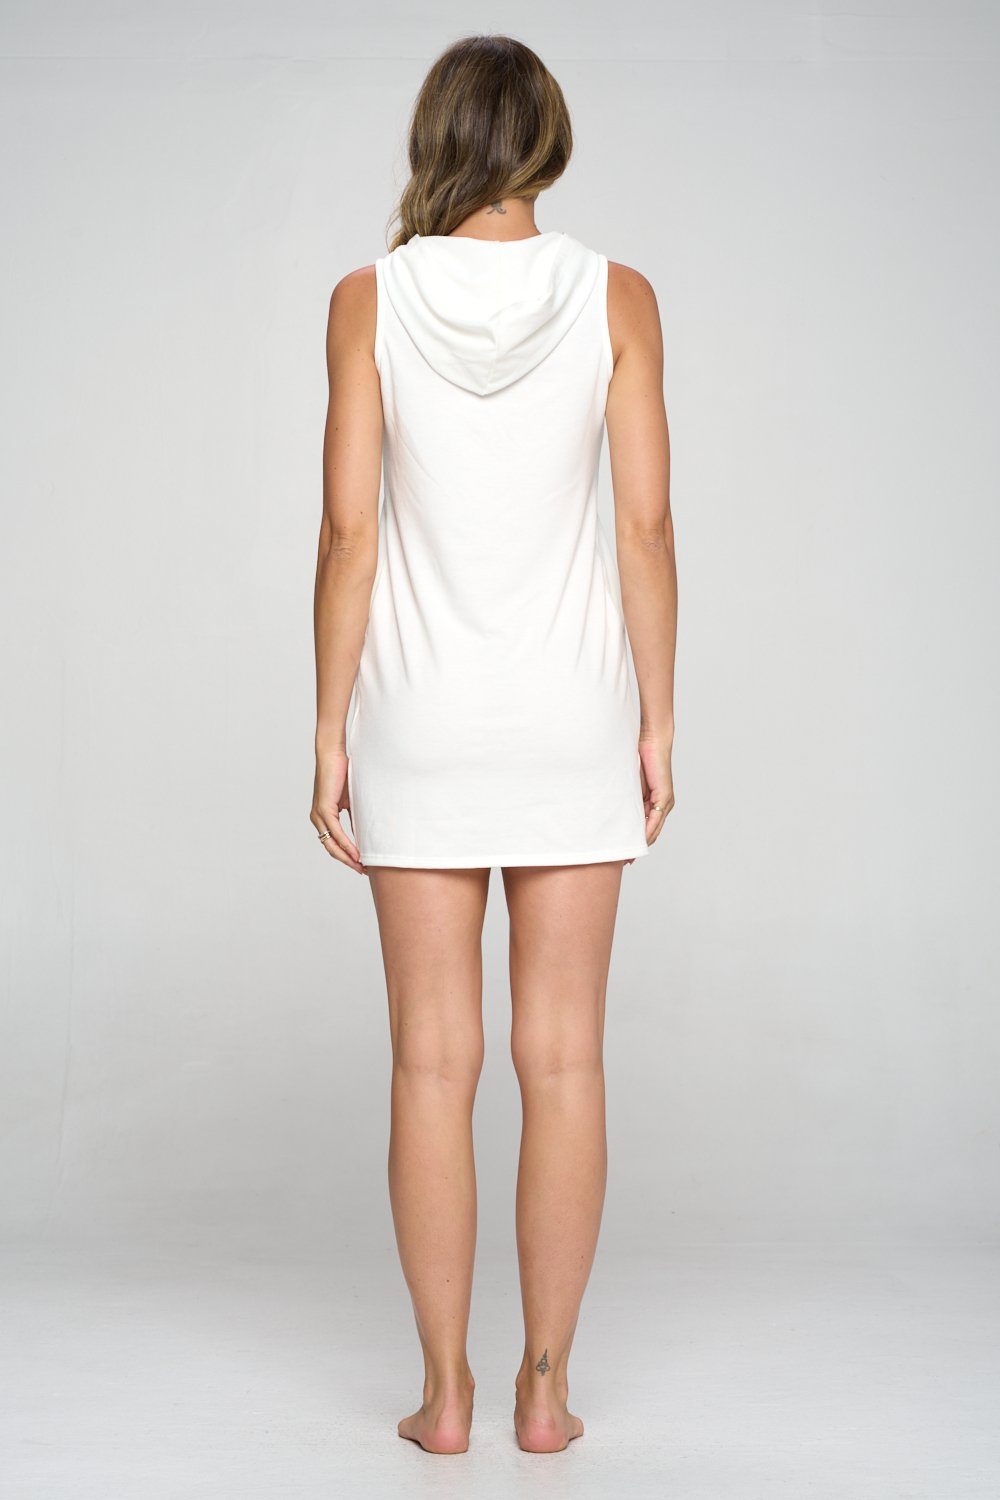 Athena - Ivory Tank Dress w Hood